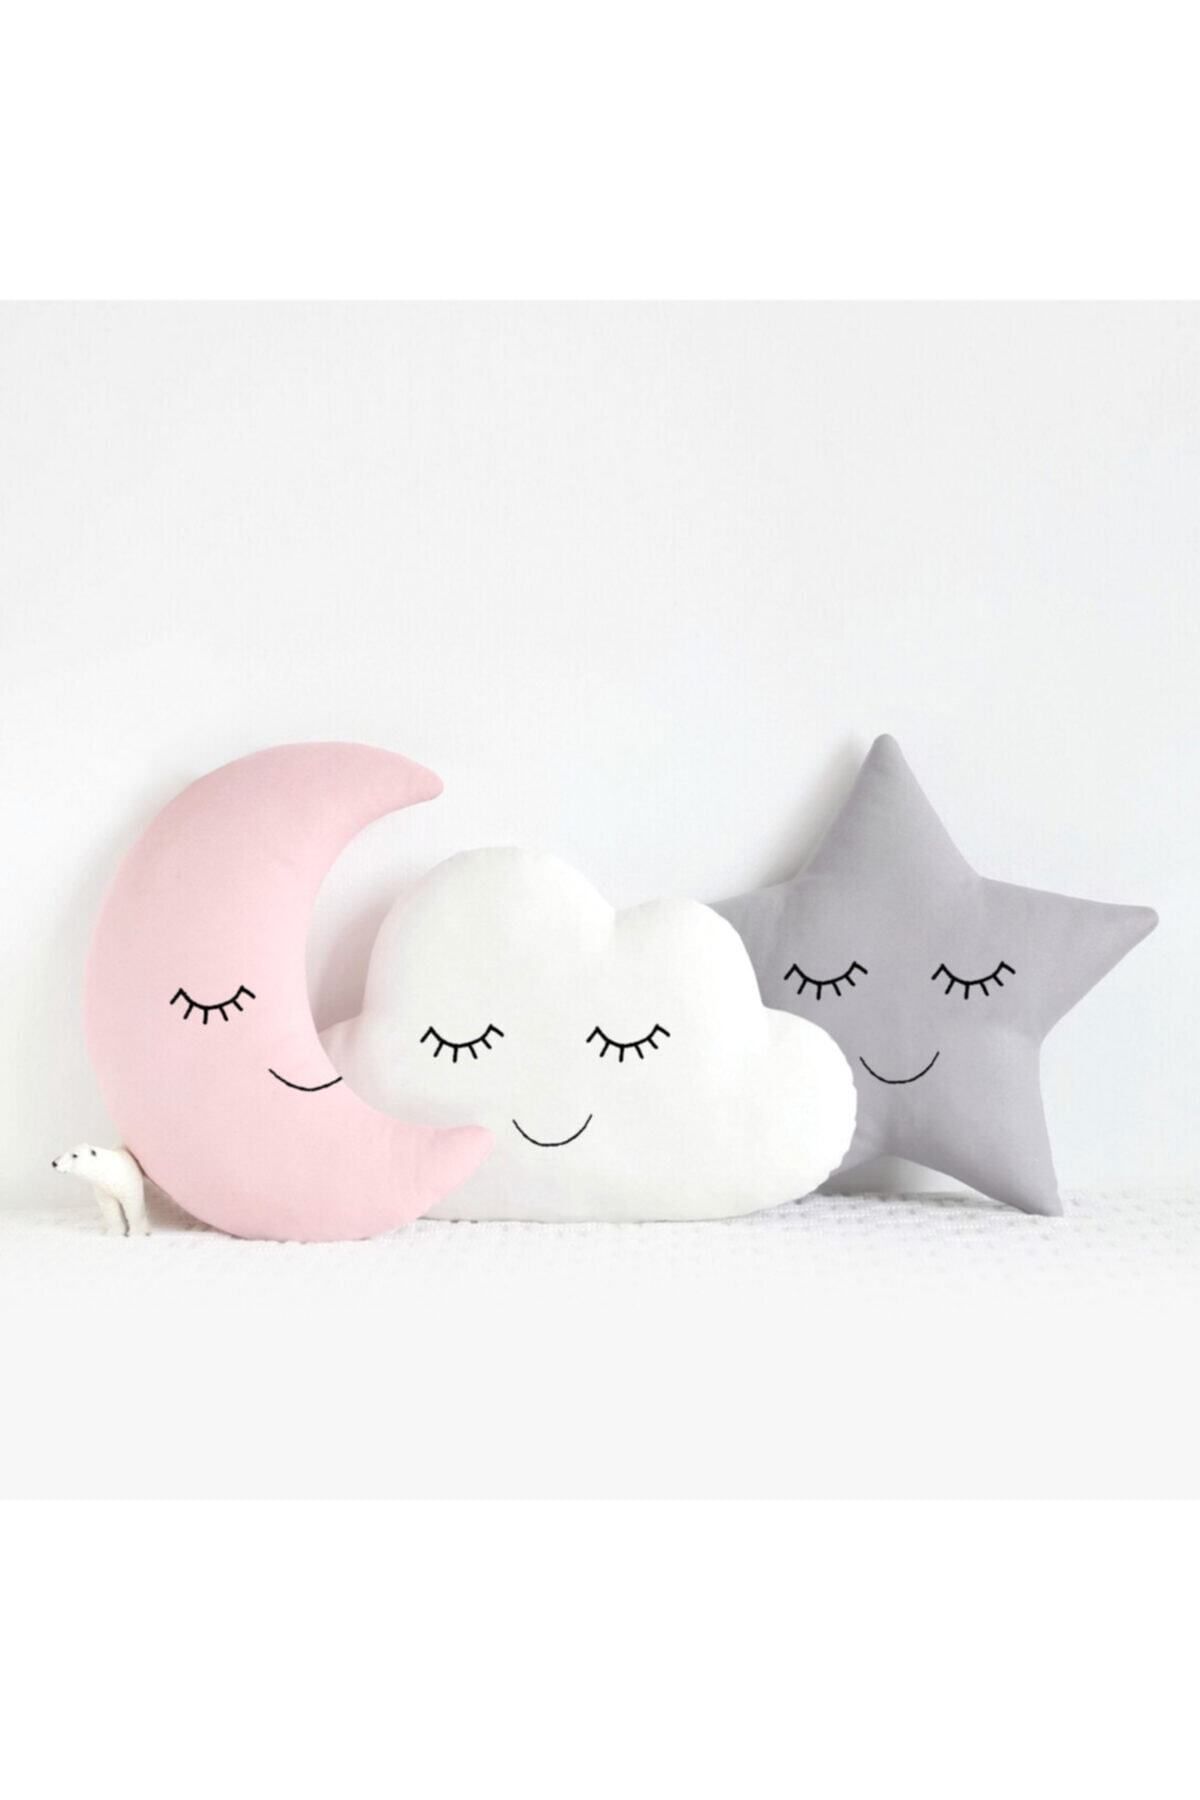 Miomundo Bebek Ve Çocuk Odası Ay-yıldız-bulut Yastık Seti Uyku Arkadaşları Üçlü Kombin Pembe Beyaz Gri